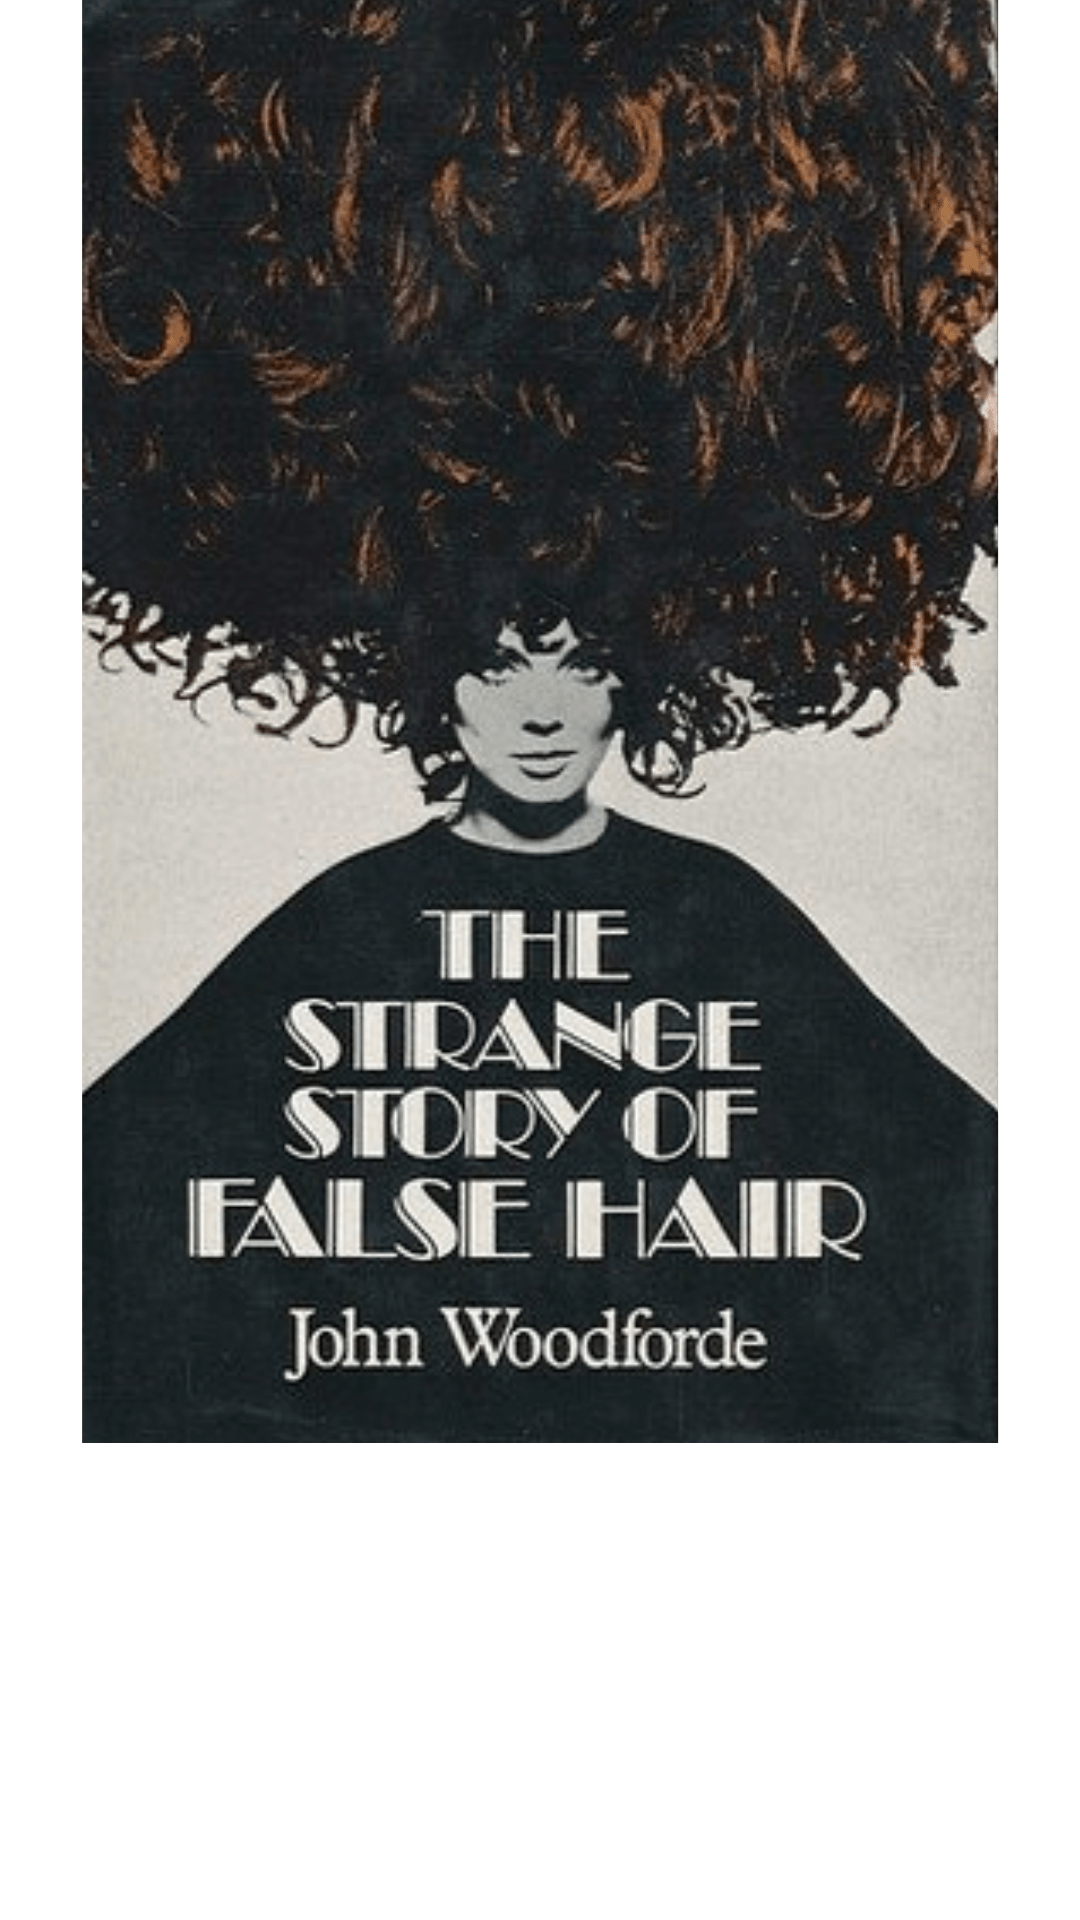 The Strange Story of False Hair